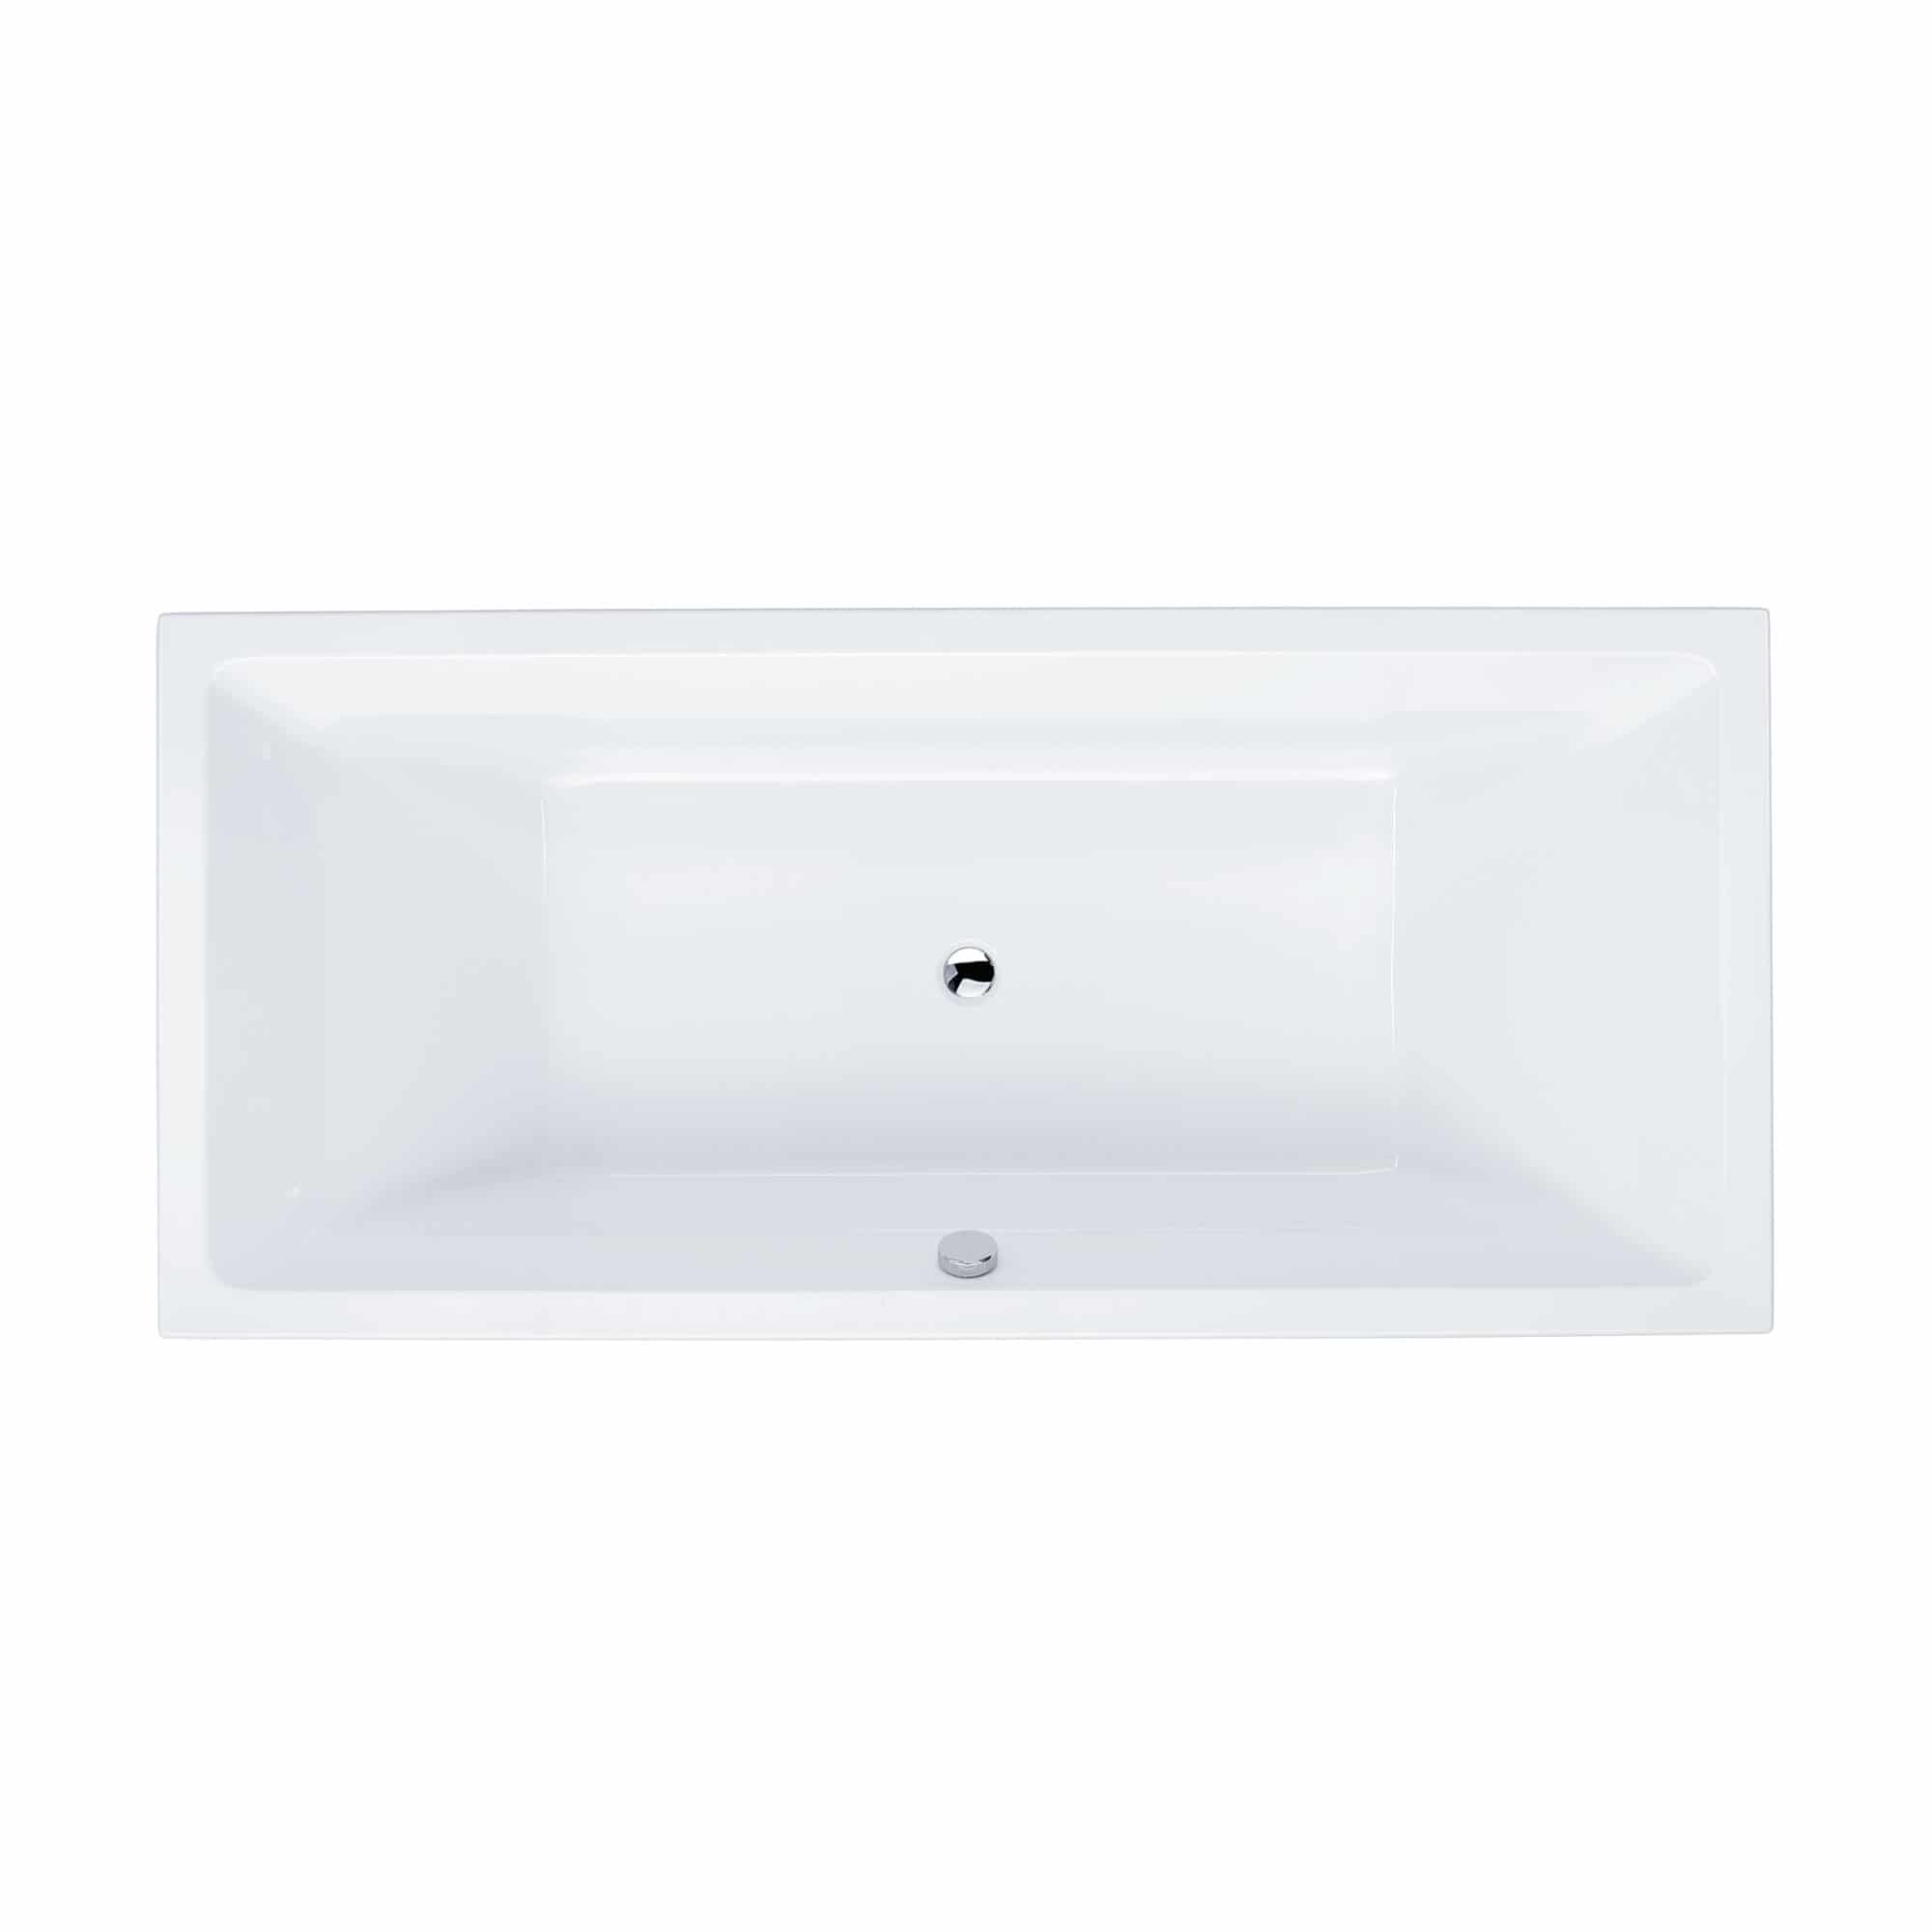 LUXOR Acryl-Rechteck-Badewanne Duo 200 cm x 90 cm x 45 cm weiß, Ablauf mittig